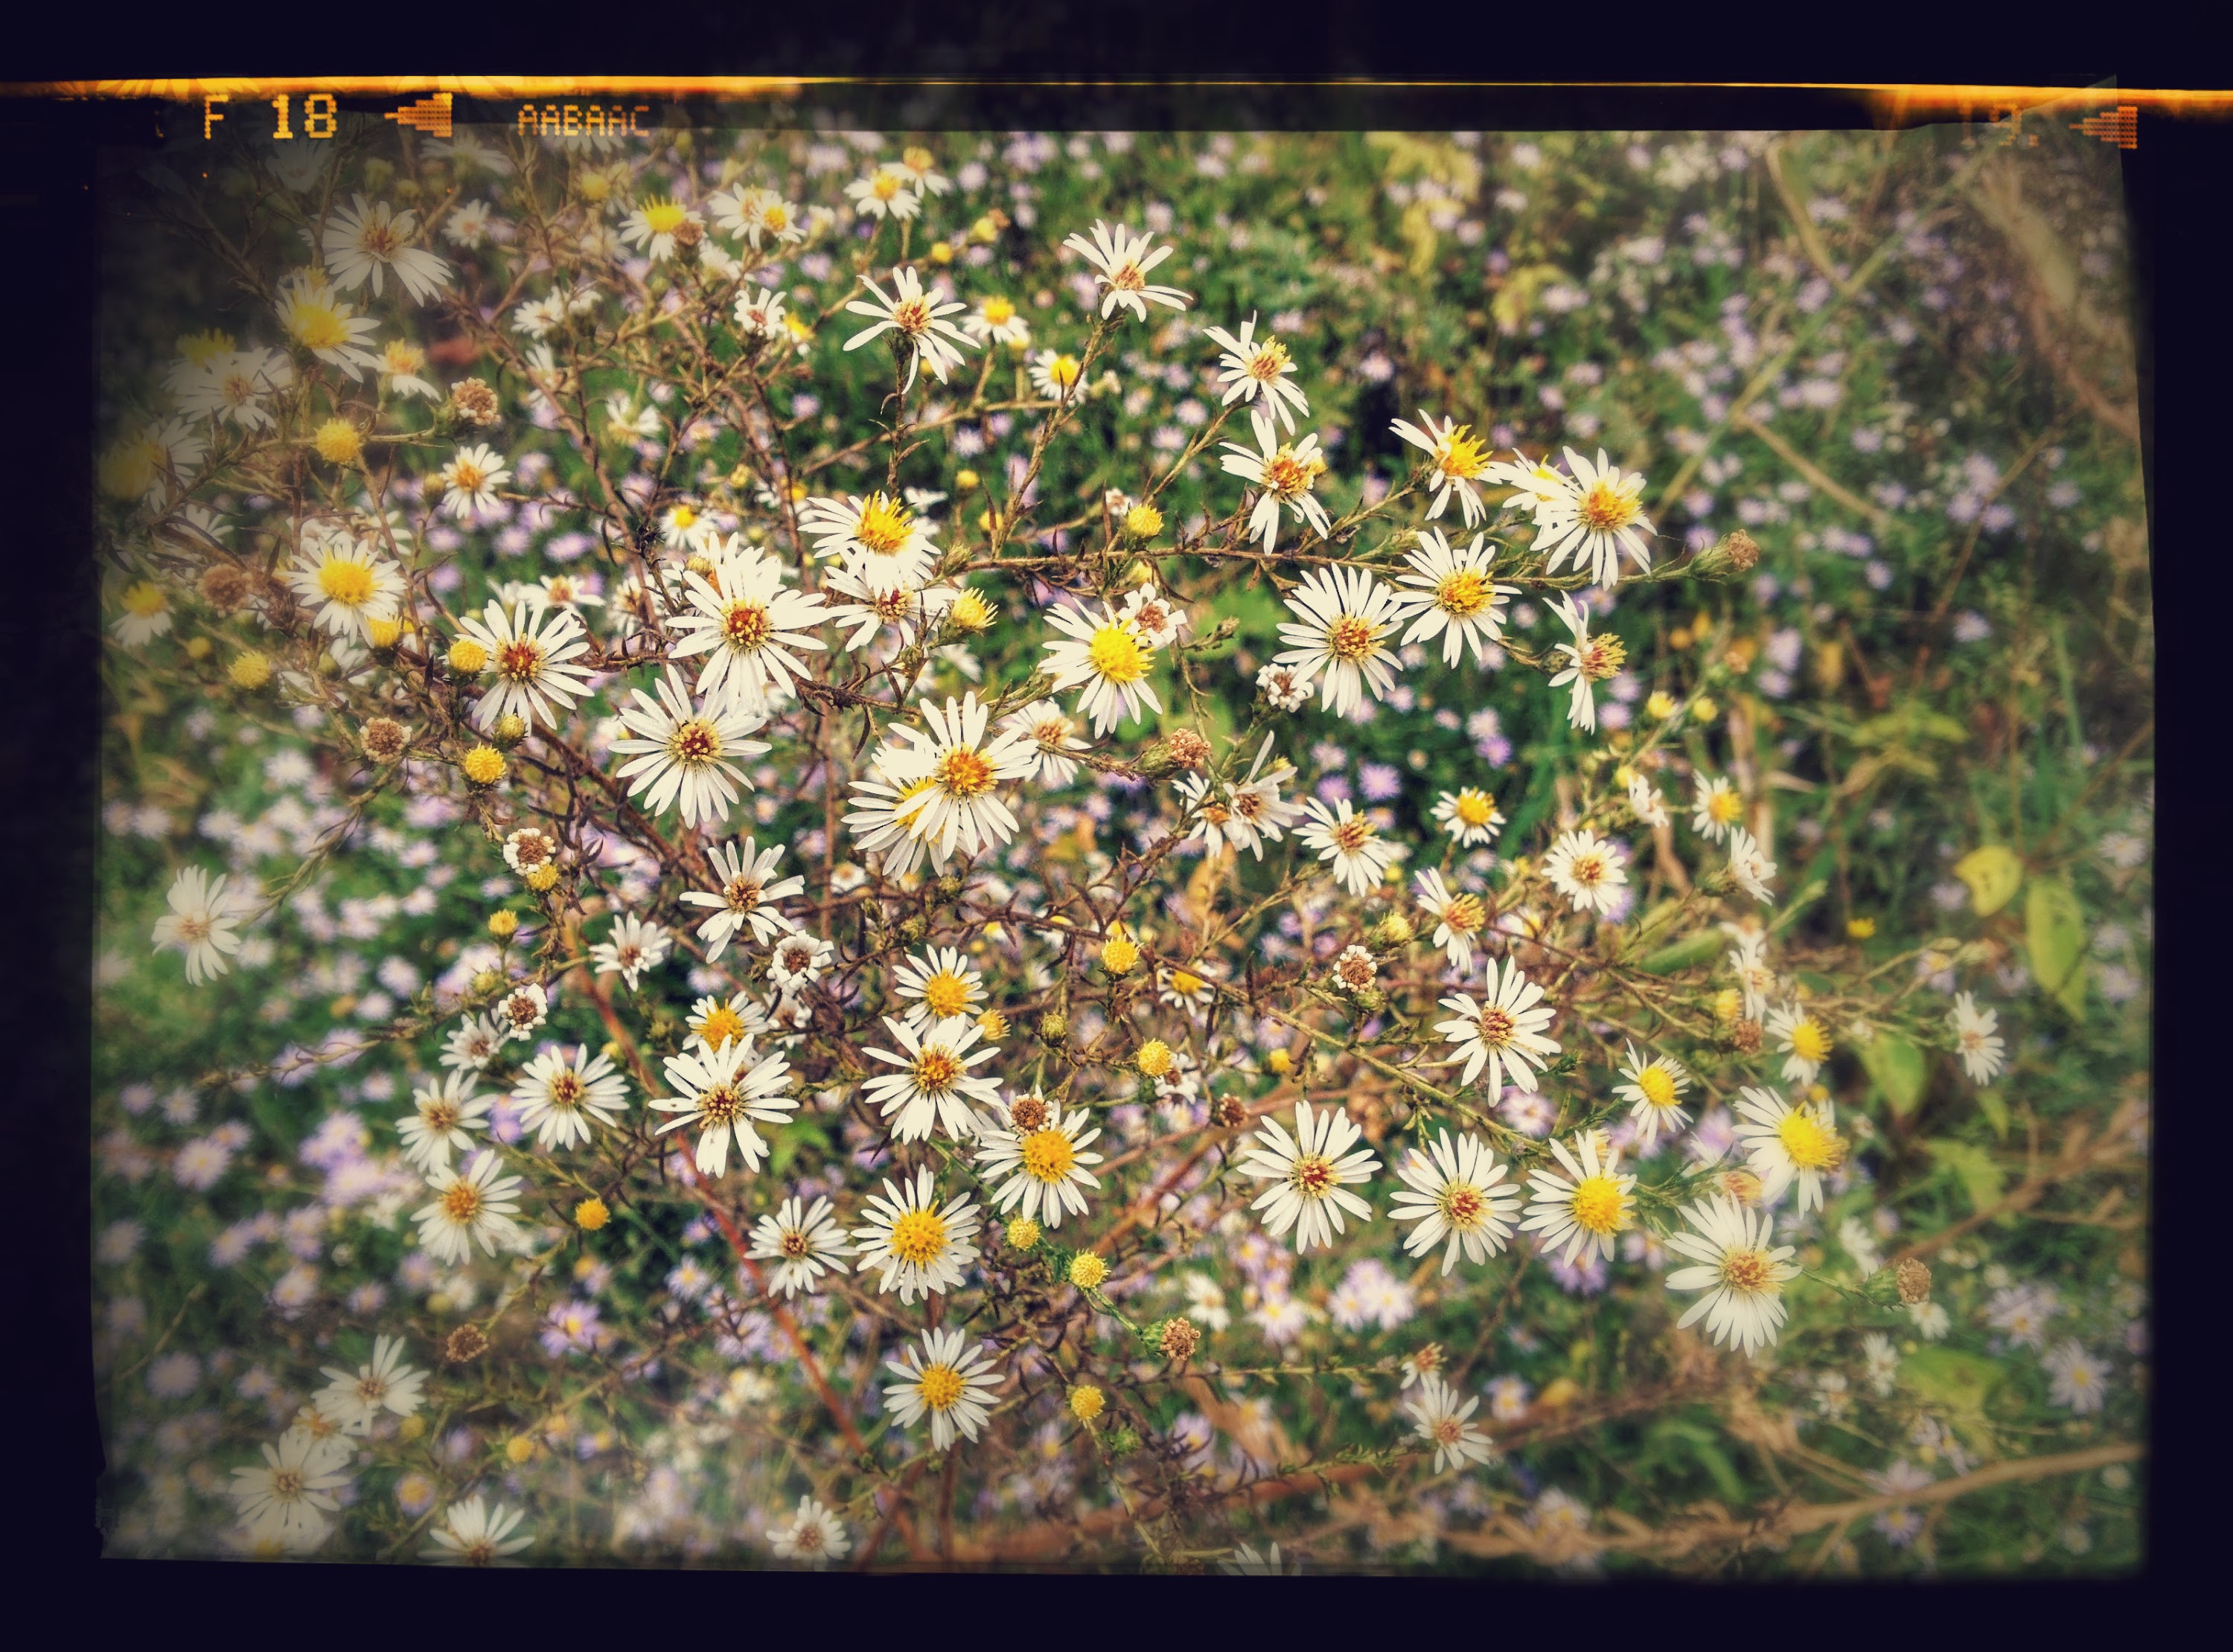 IMG_20150928_161753-EFFECTS.jpg 금강변에 예쁘게 핀 국화과의 작은 흰색 들국화 꽃